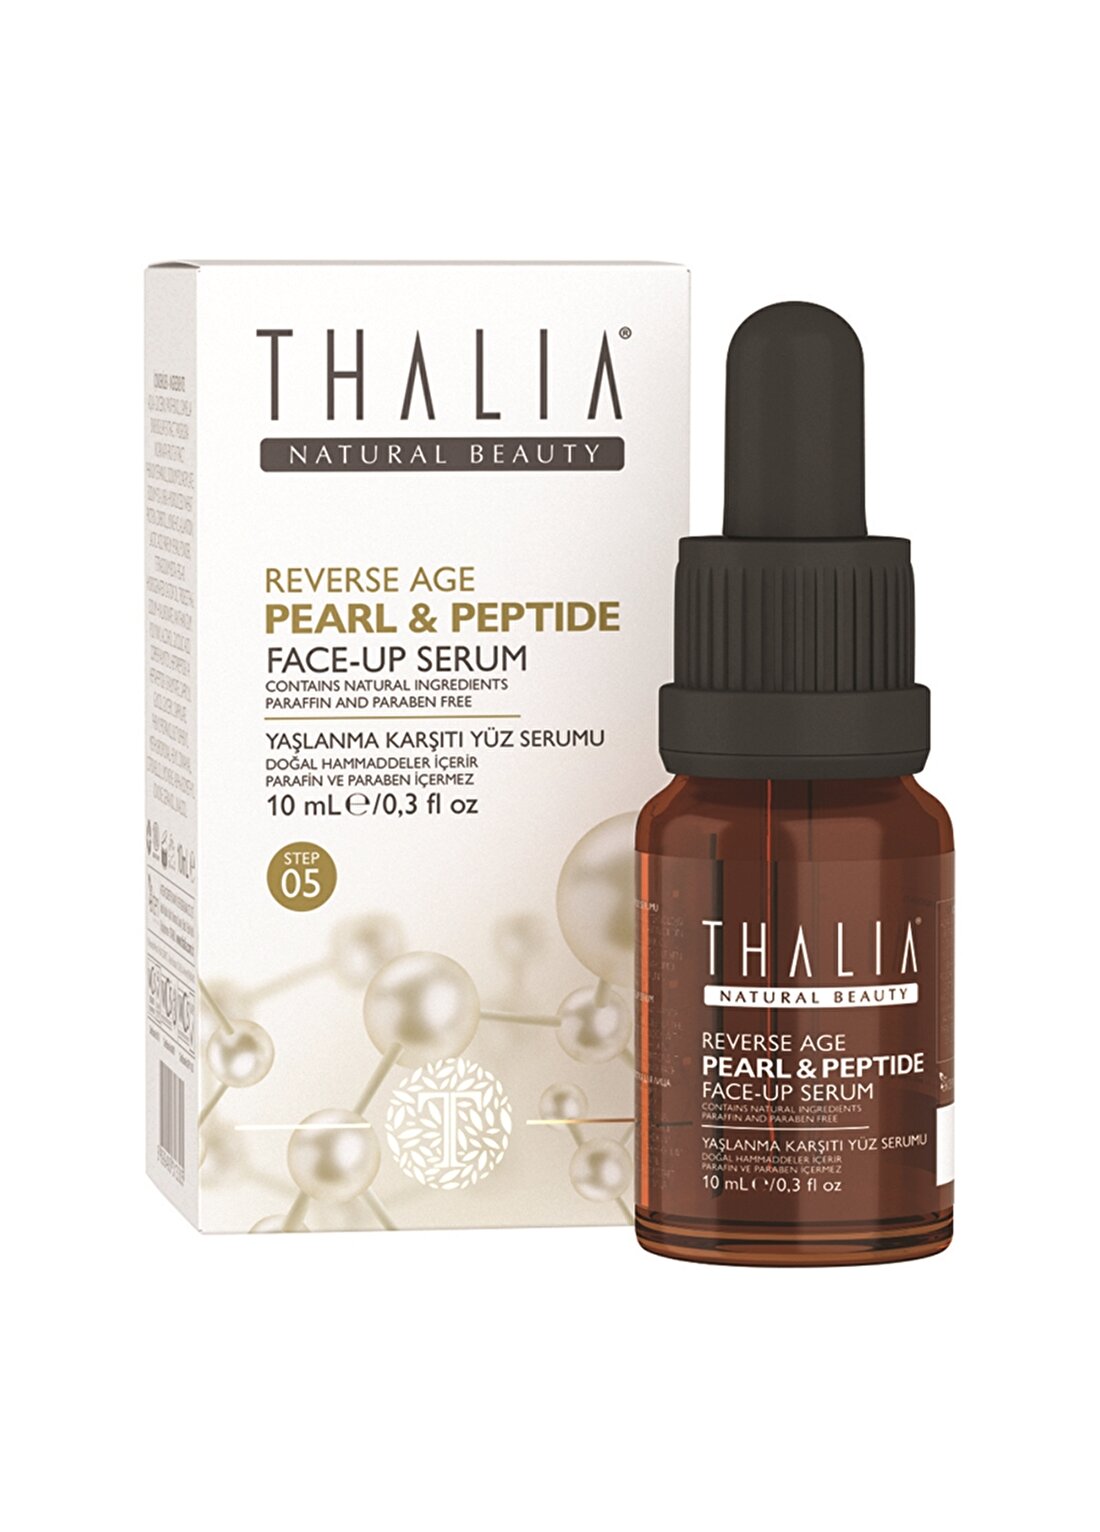 Thalia Pearl & Peptide Faceup Serum 10 Ml Step 5 Onarıcı Krem